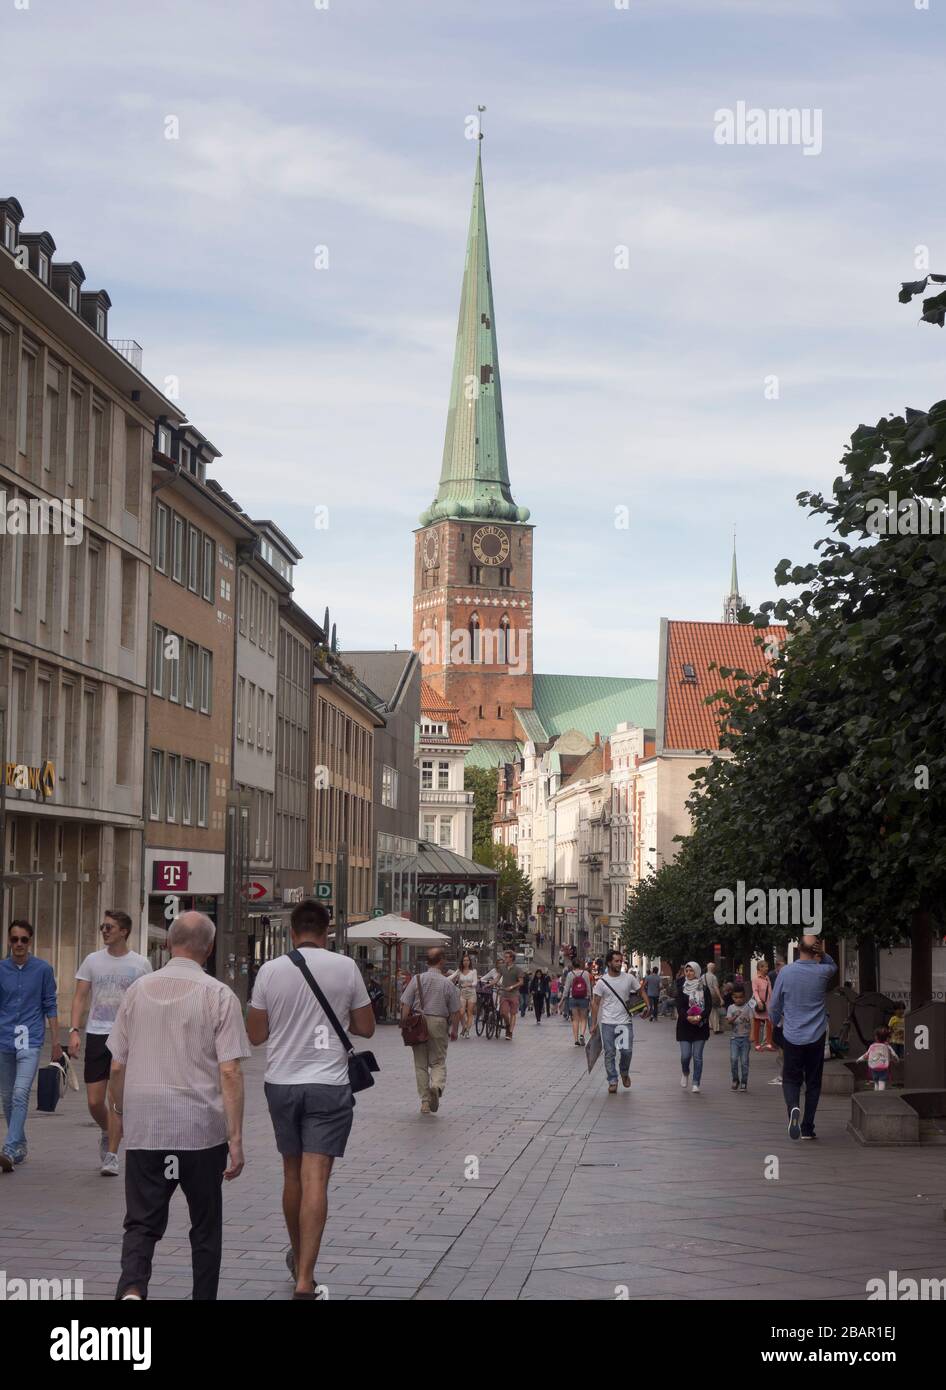 Strada pedonale, Breite Strasse, nel centro di Lübeck Germania, chiesa di San Giacomo sullo sfondo Foto Stock